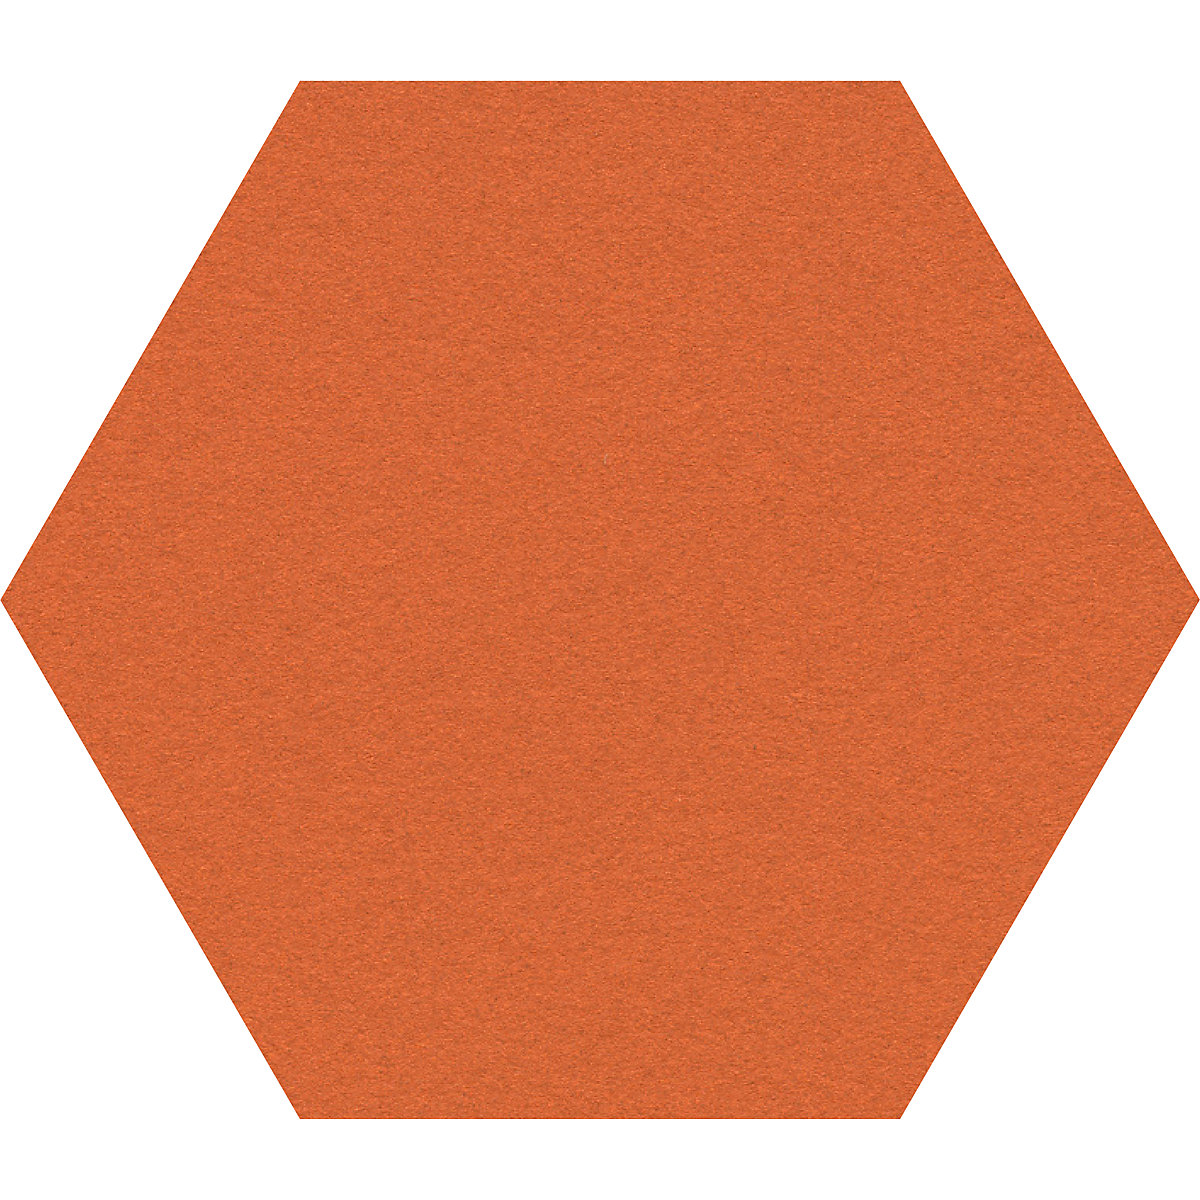 Tableau à épingles design hexagonal – Chameleon, liège, l x h 600 x 600 mm, orange-28